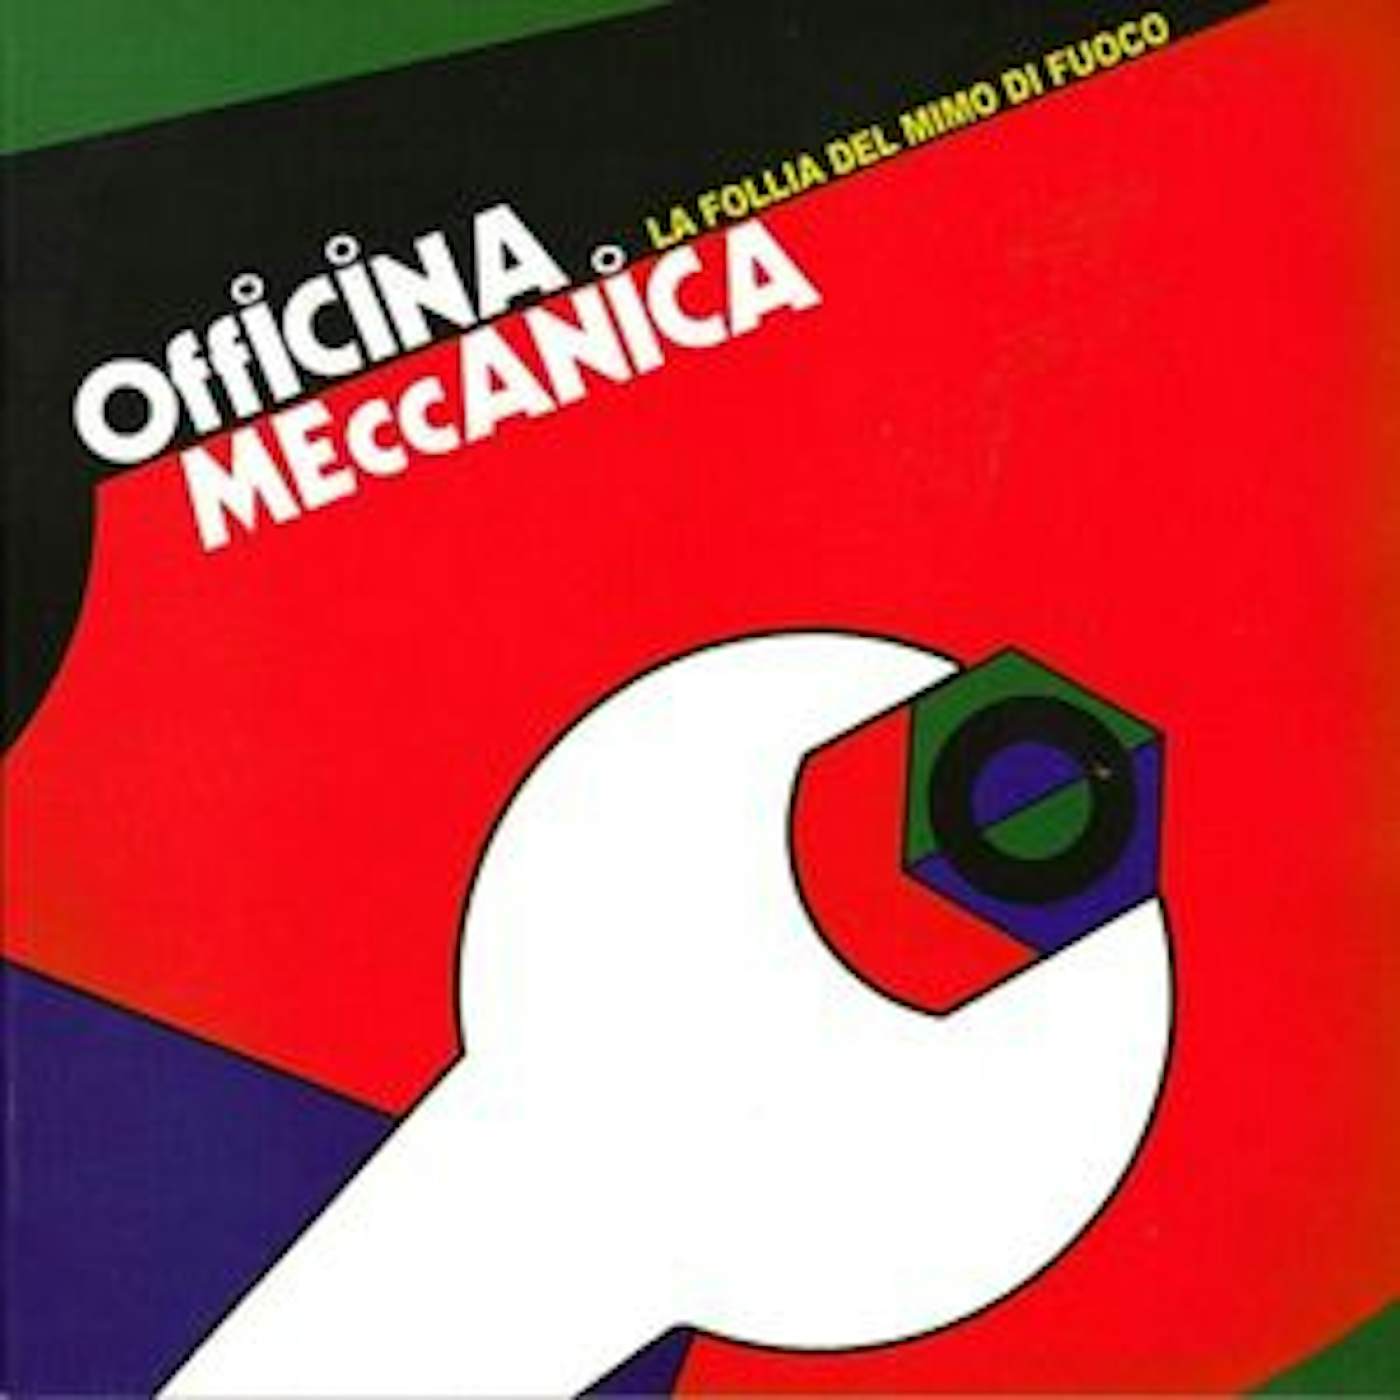 Officina Meccanica La Follia Del Mimo Di Fuoco Vinyl Record